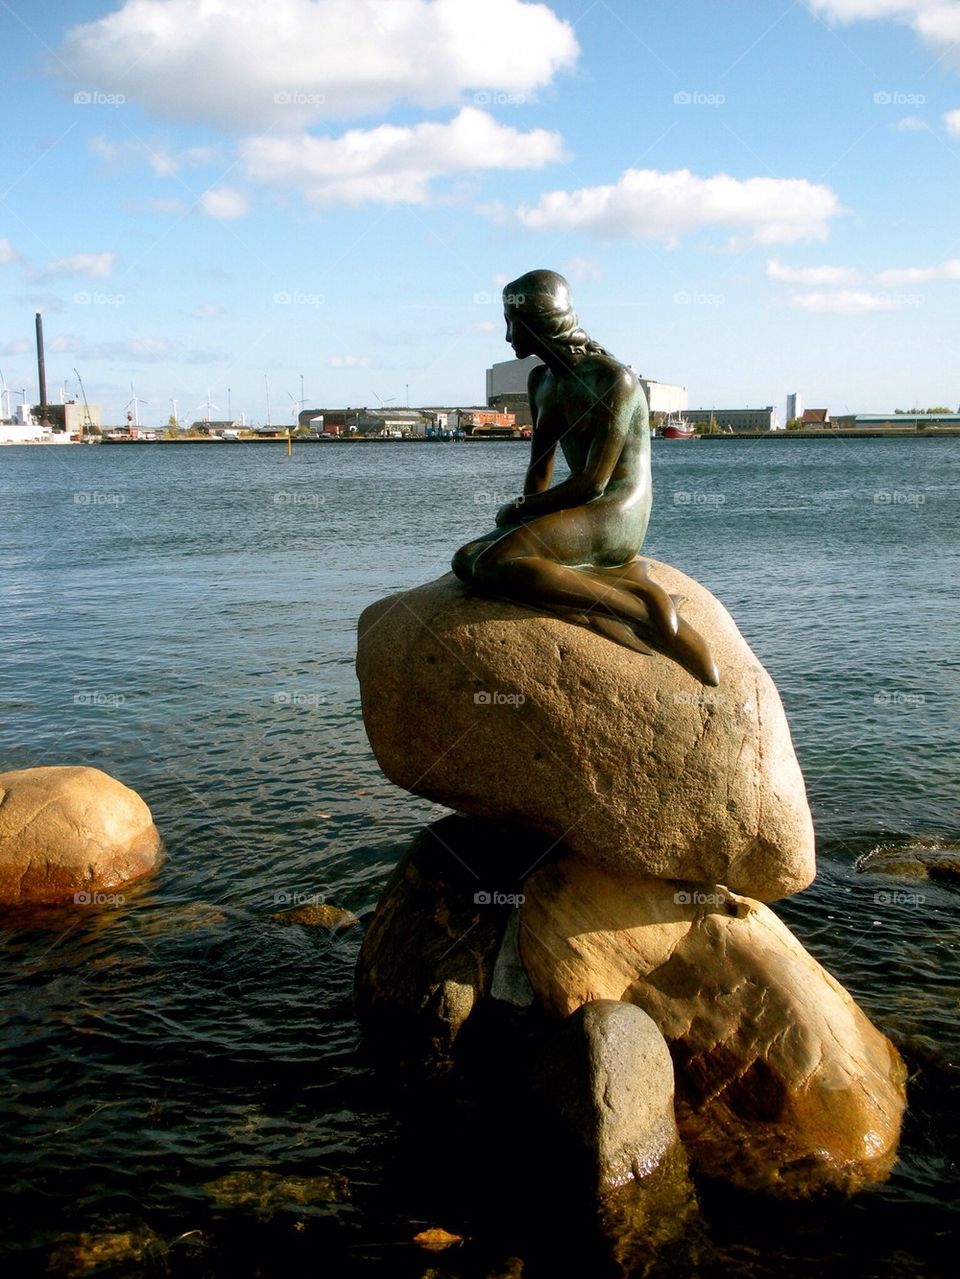 The little mermaid, Copenhagen denmark